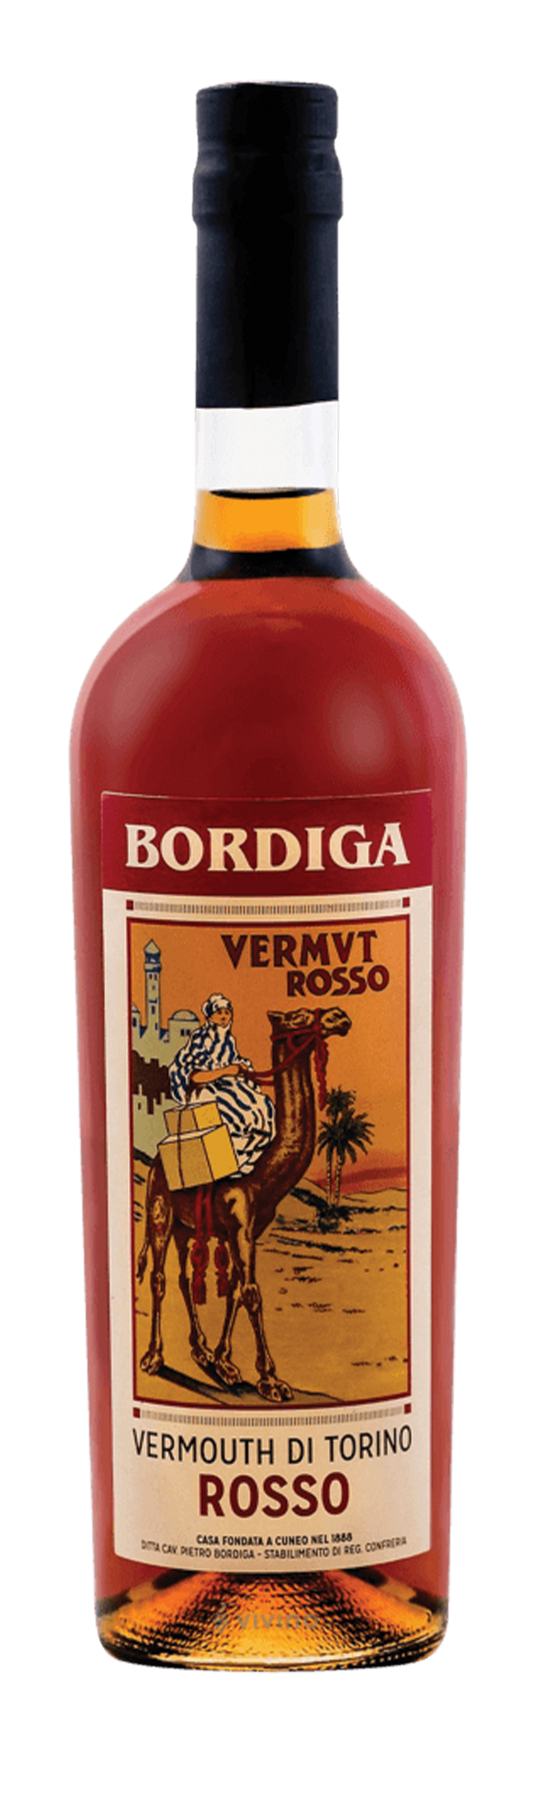 Bordiga Rosso 18% 75cl Vermouth di Torino